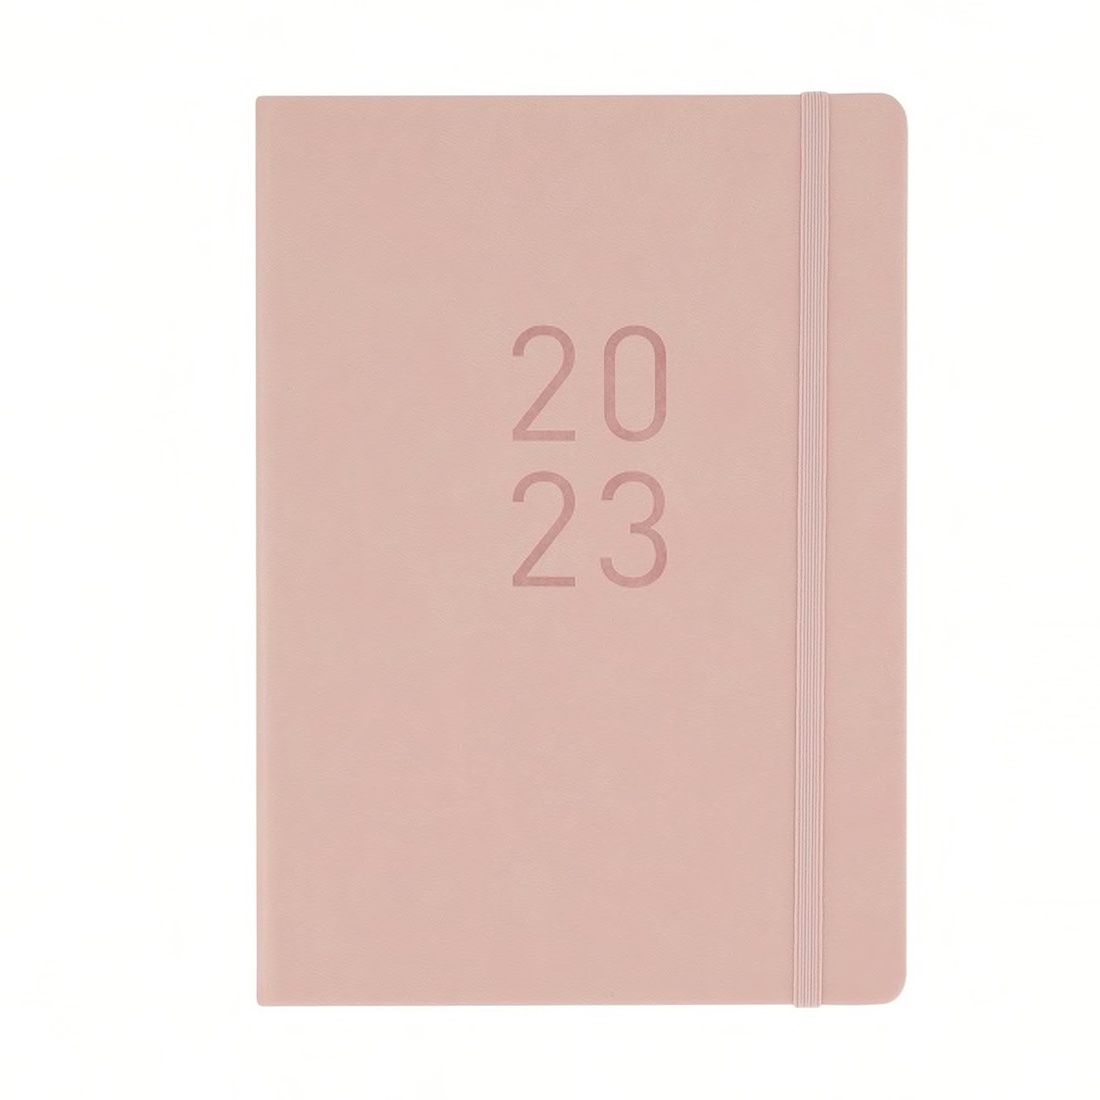 blush pink stylish diaries